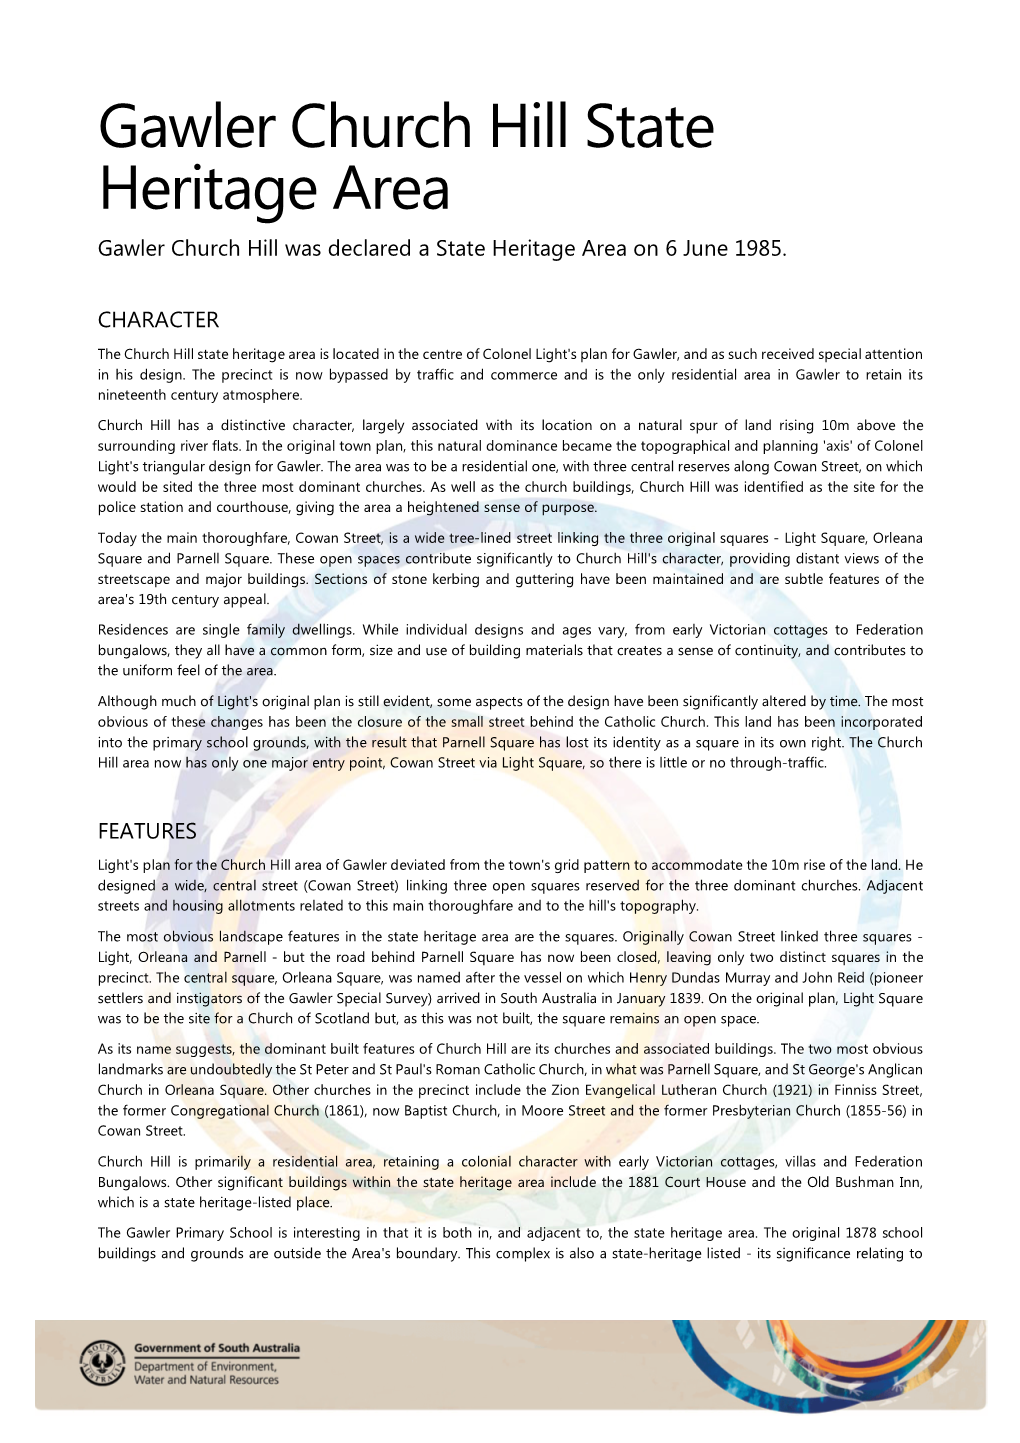 Gawler Church Hill State Heritage Area Gawler Church Hill Was Declared a State Heritage Area on 6 June 1985